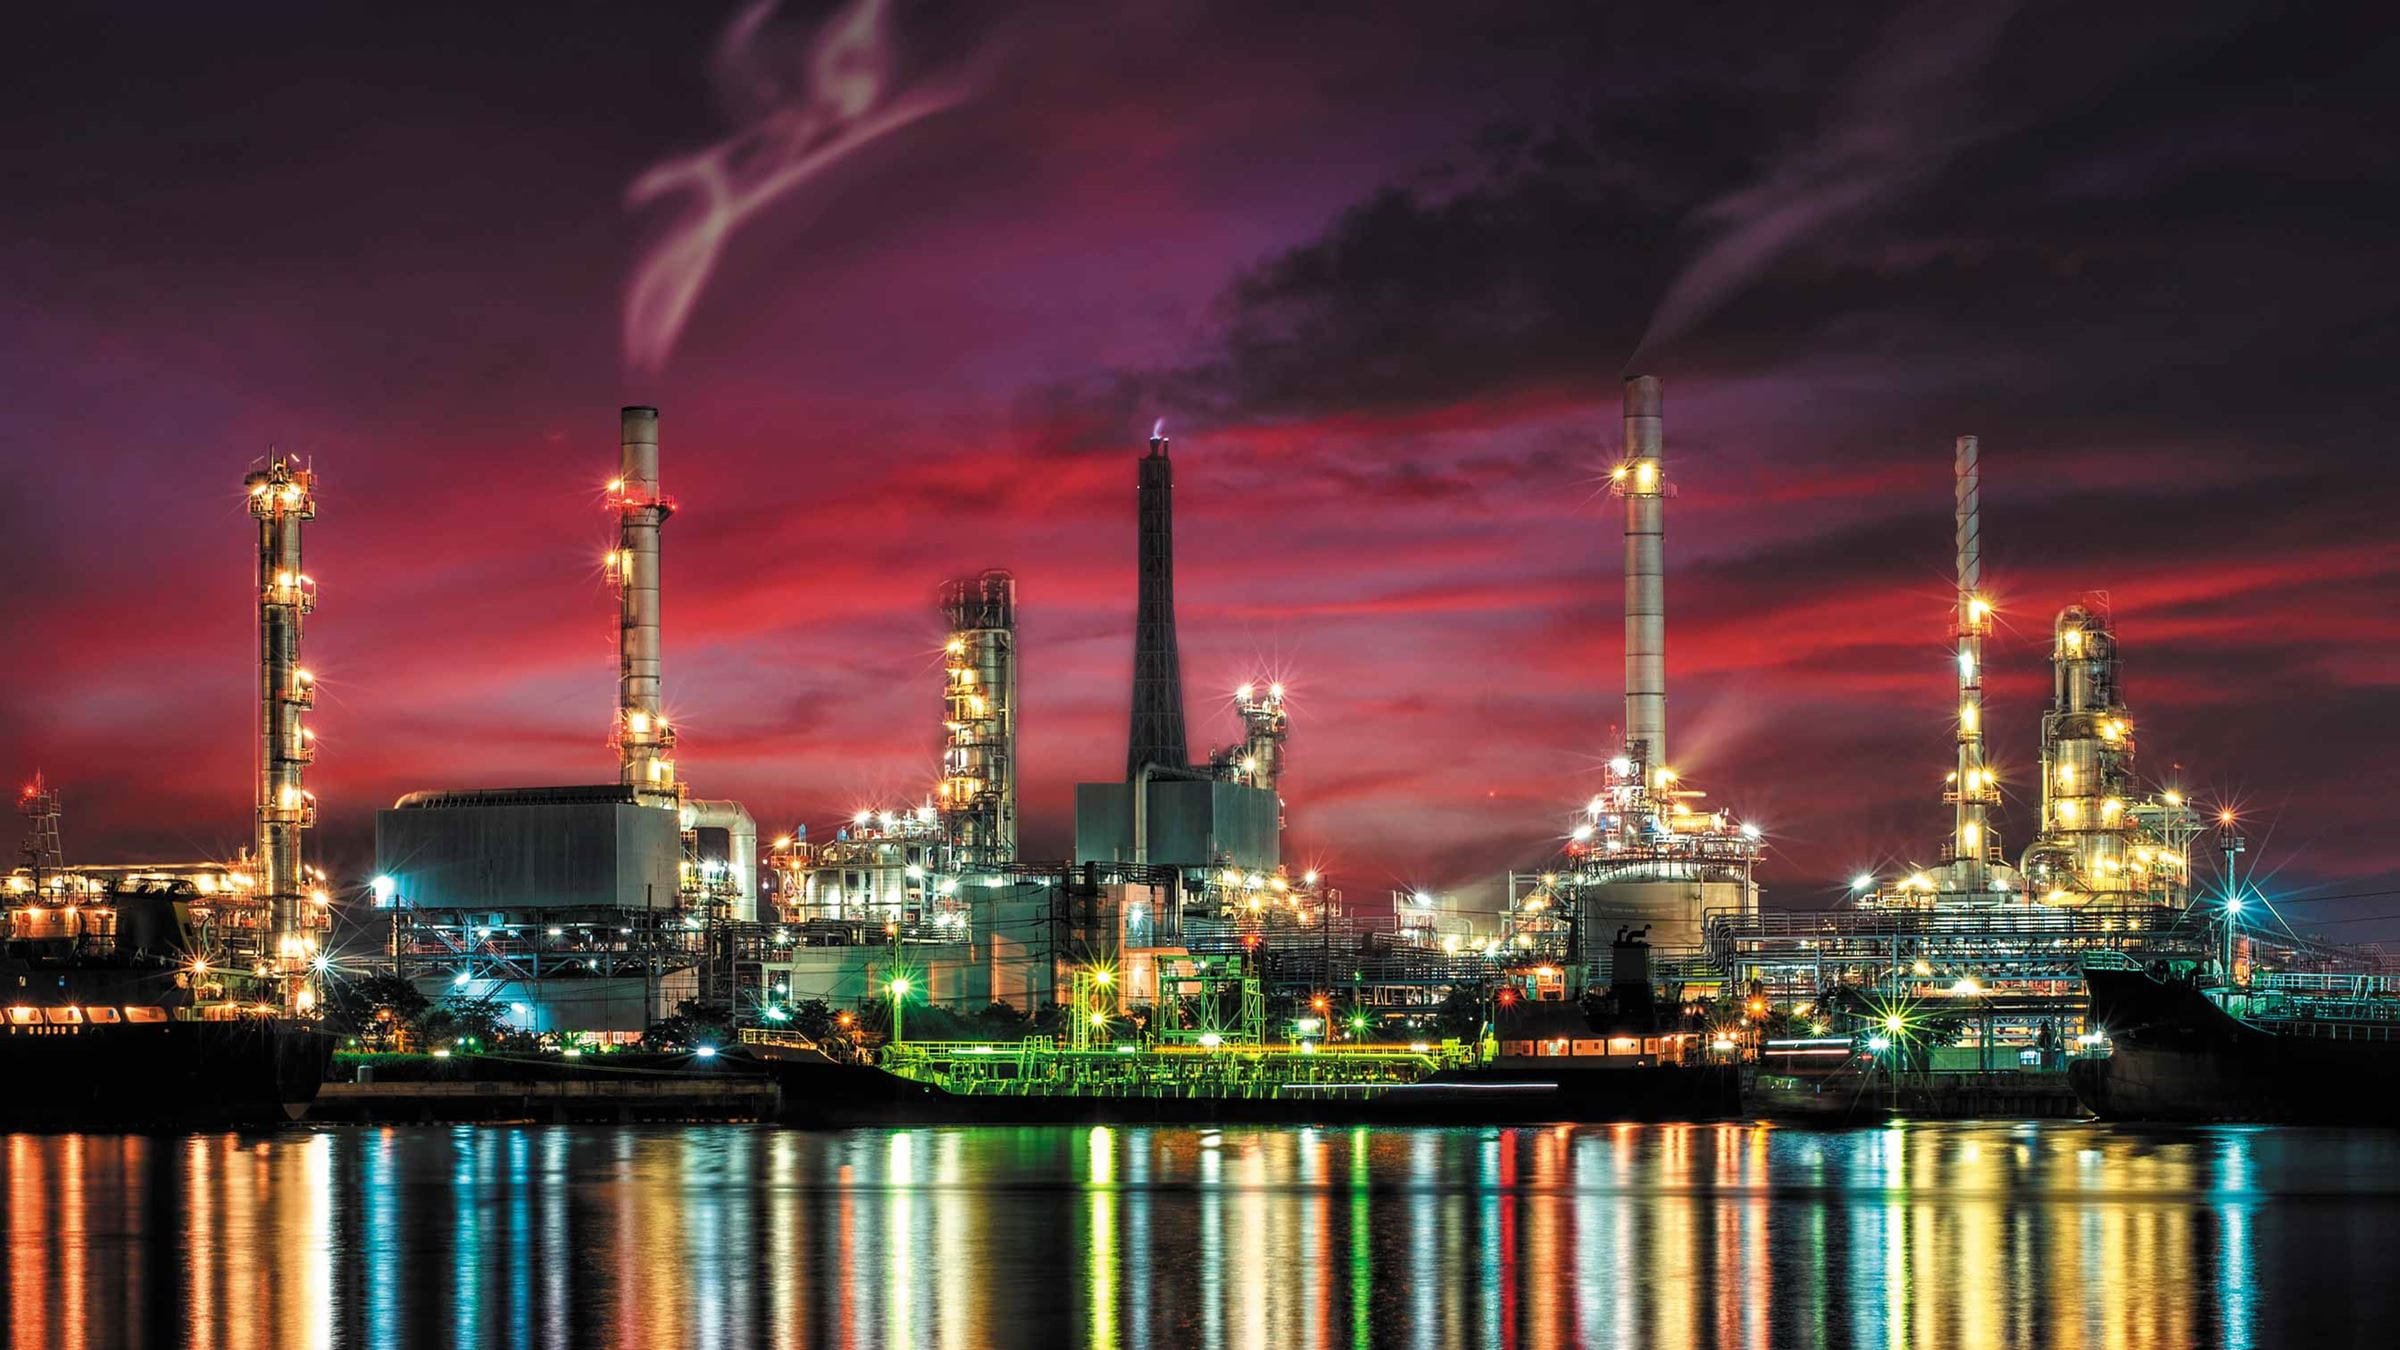 Kuwait refinery at night